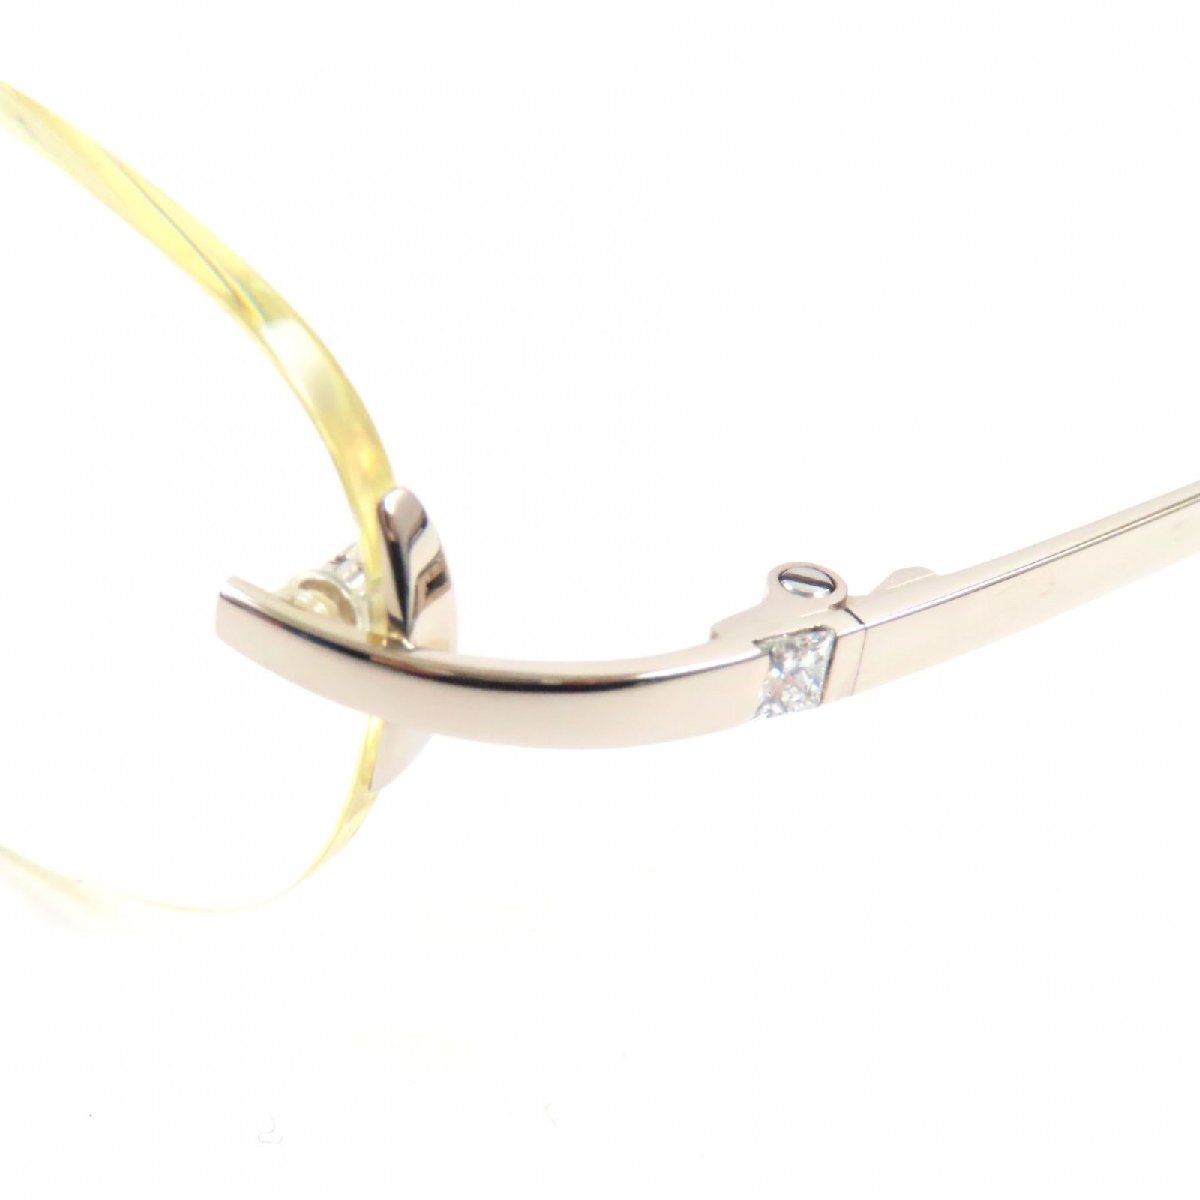 美品▼Cartier カルティエ 750(18K) 2Pダイヤモンド ツーポイント メガネ 眼鏡 アイウェア シルバー ケース付き 仏製 総重量35.4g メンズ_画像7